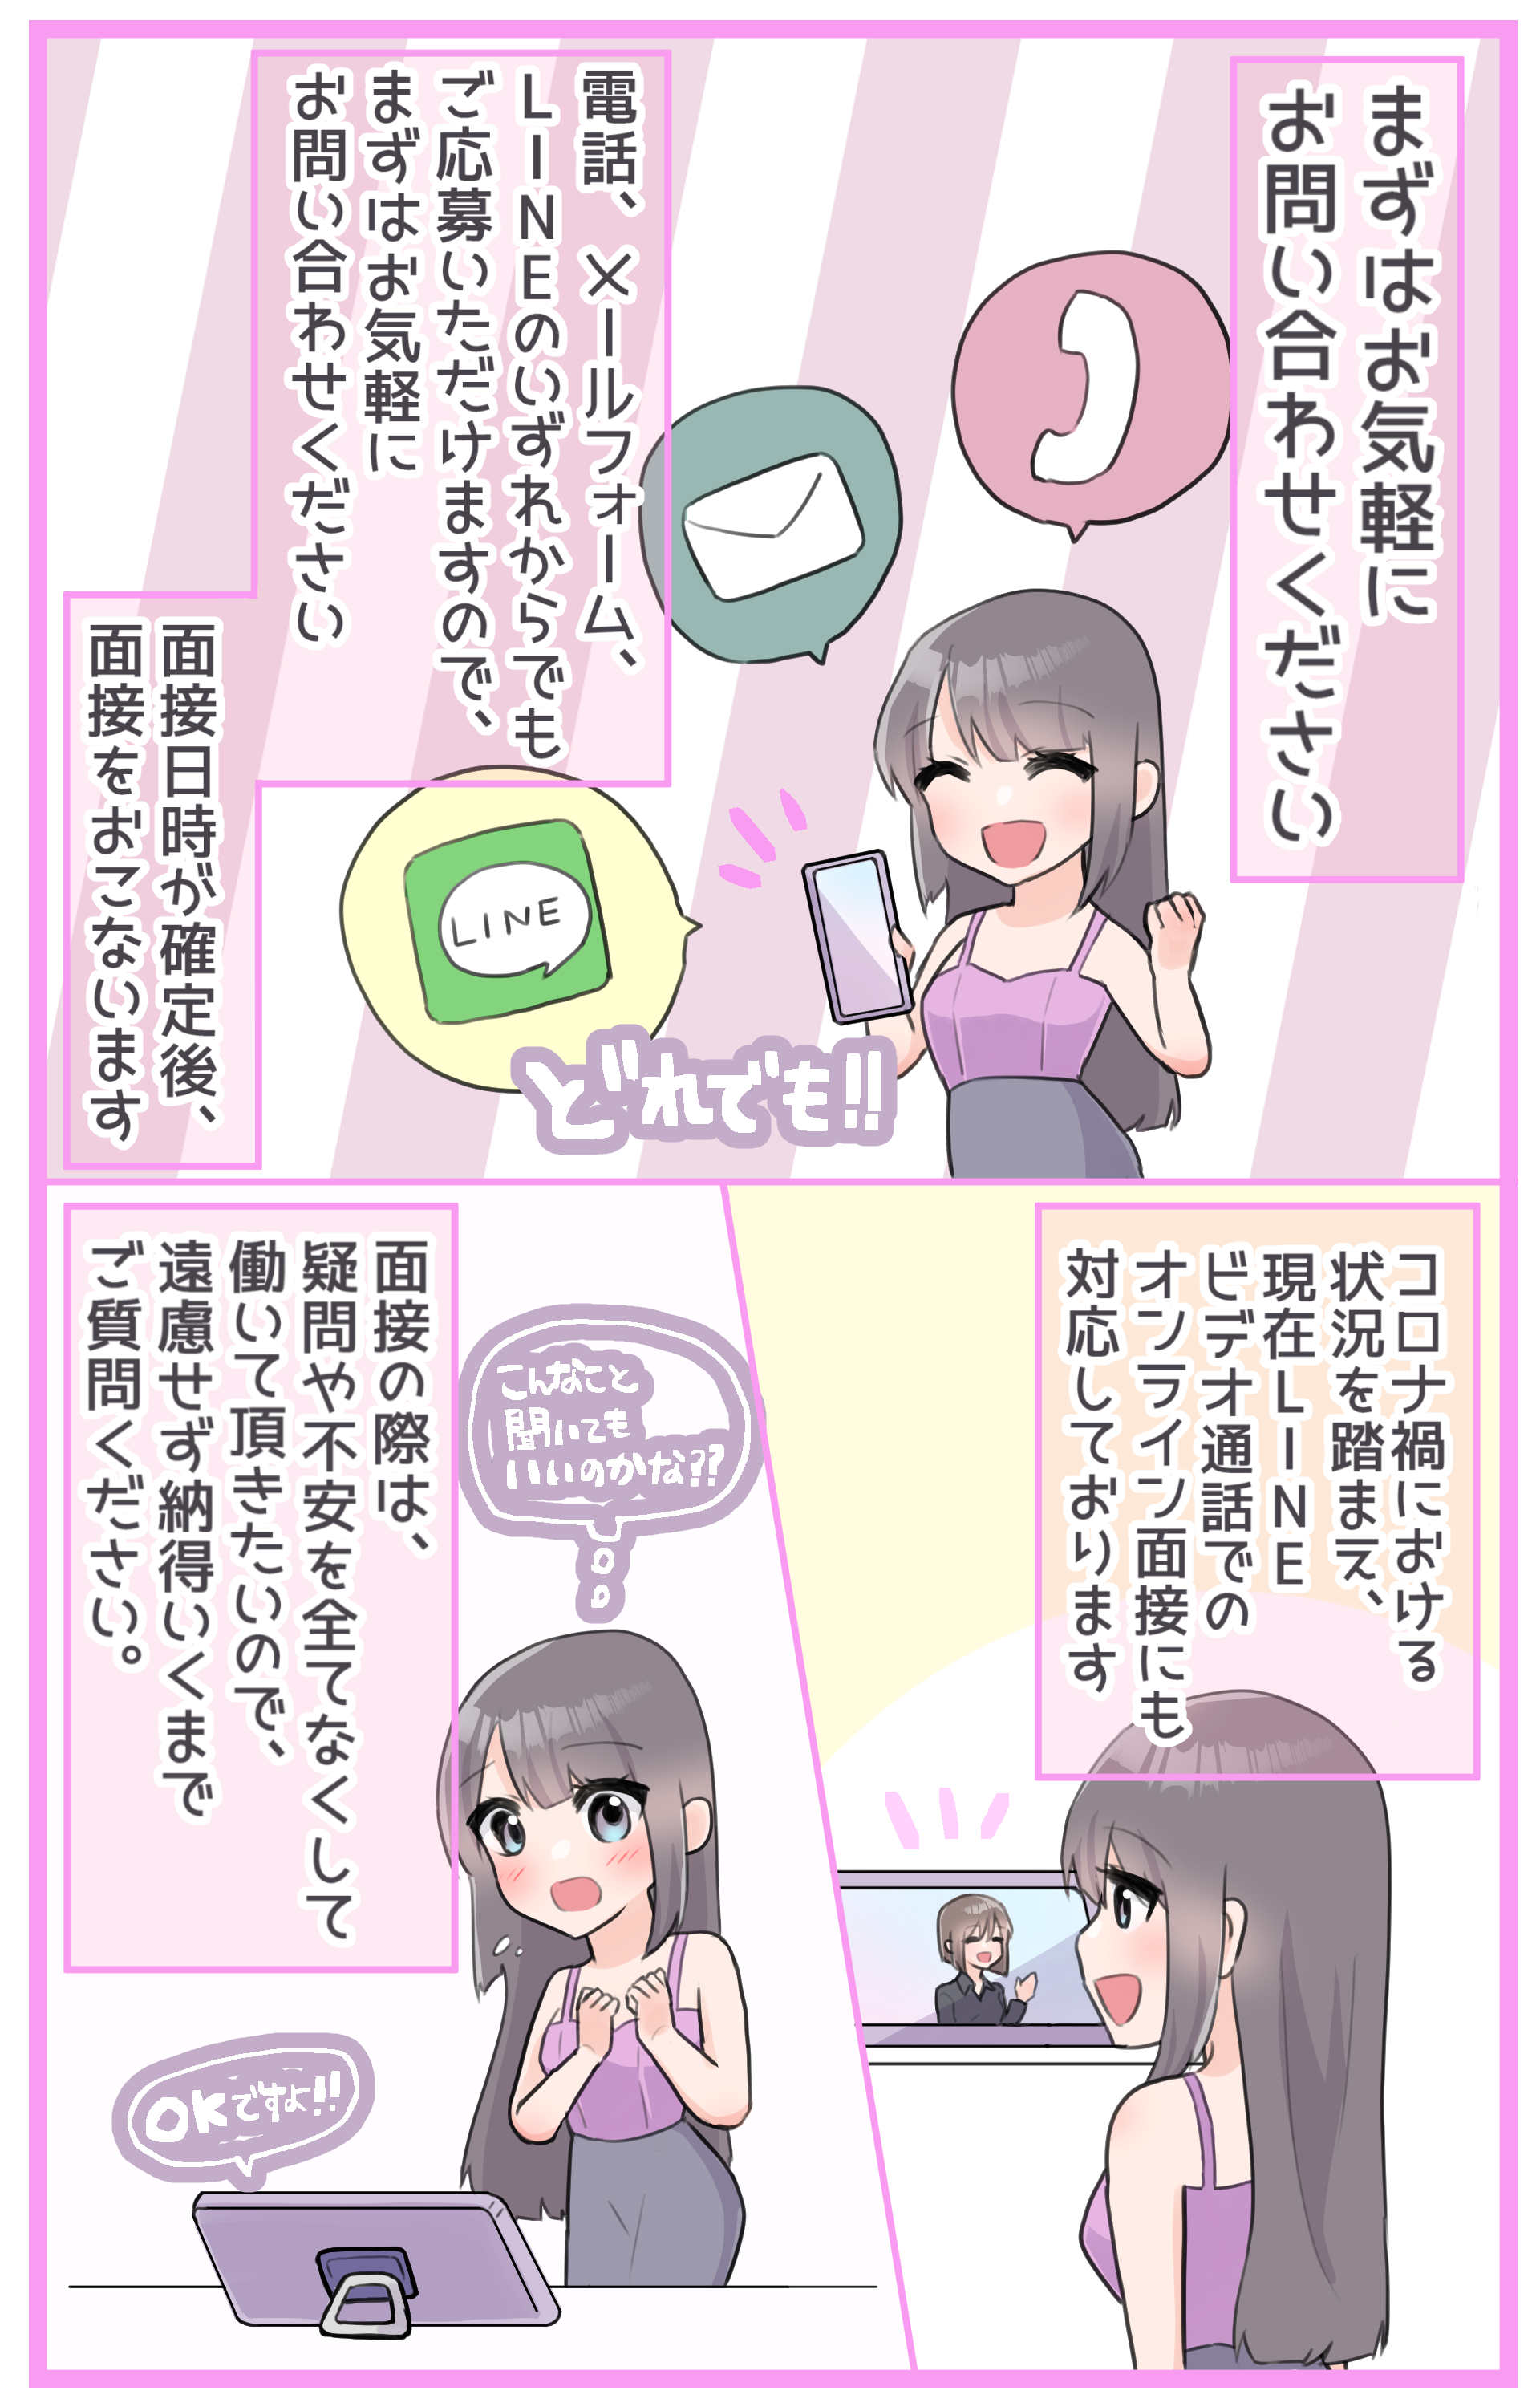 池袋リフレ池袋ぴぃかつ学園入店までの流れ漫画4